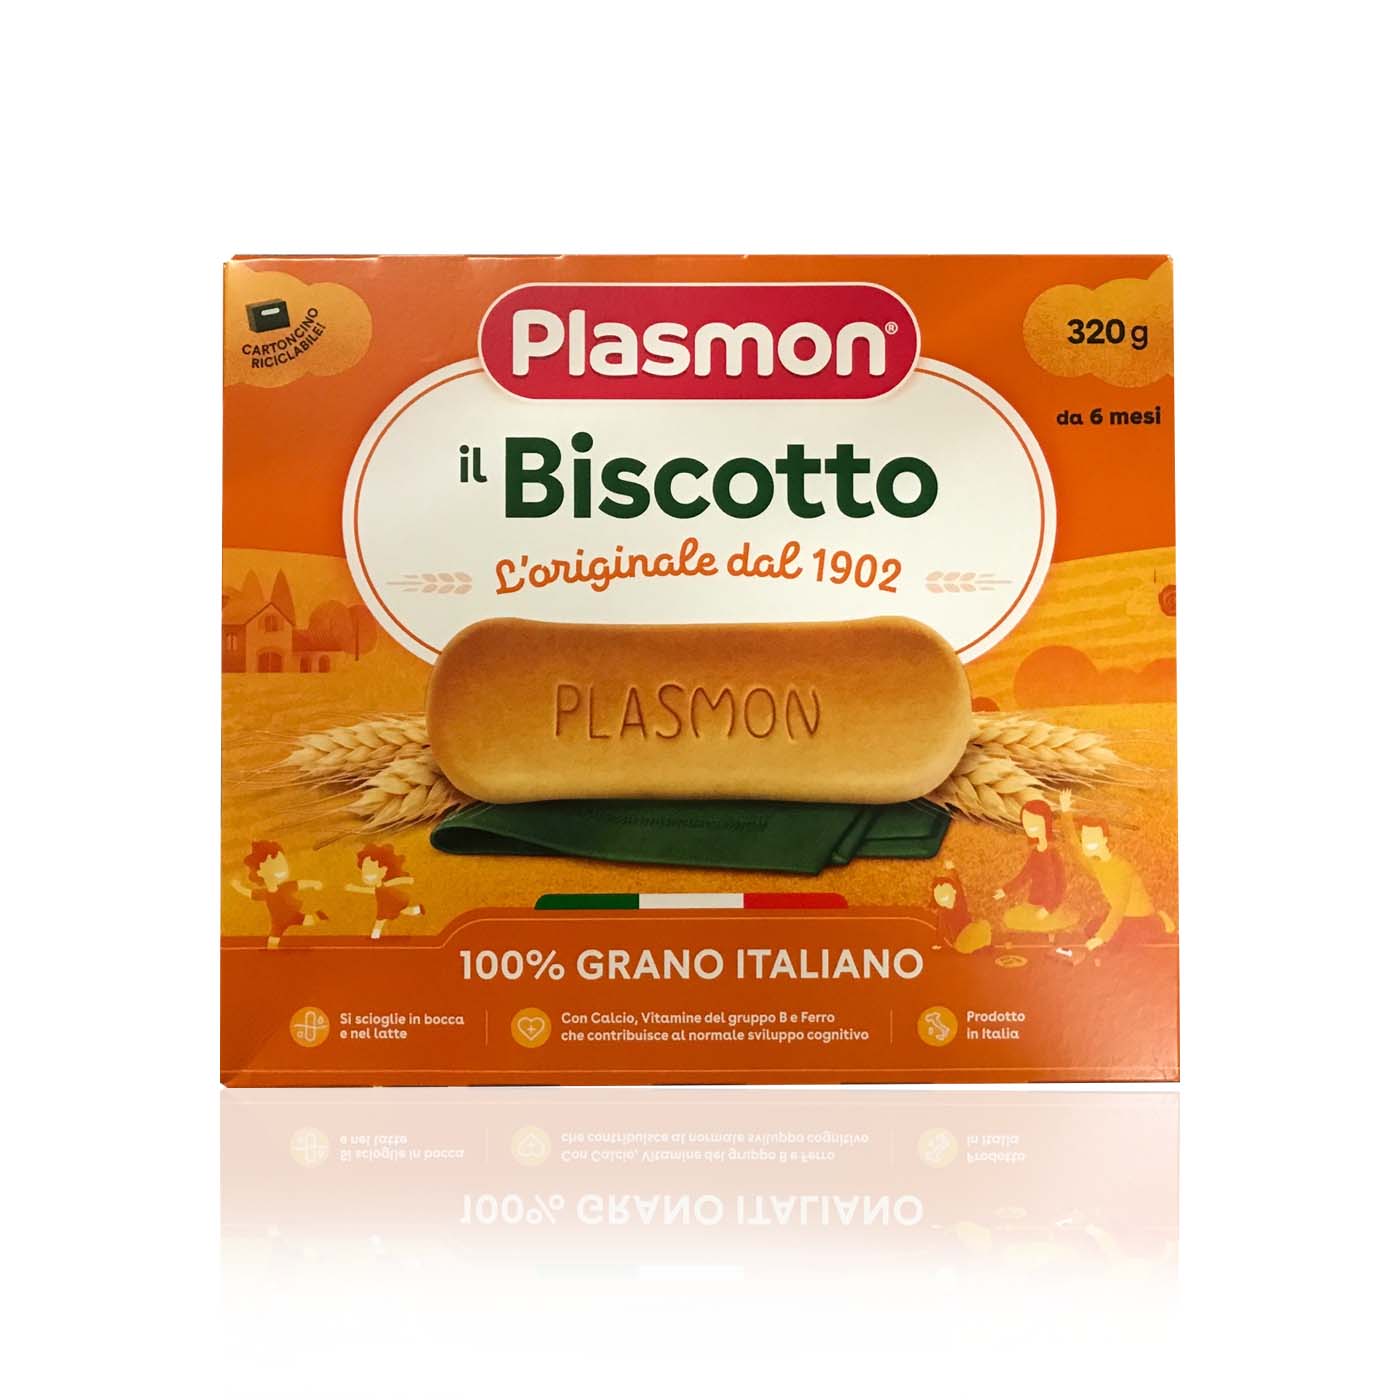 PLASMON Biscotti dei Bambini- Kinderkekse ab 6 Monat- 0,320kg - italienisch-einkaufen.de